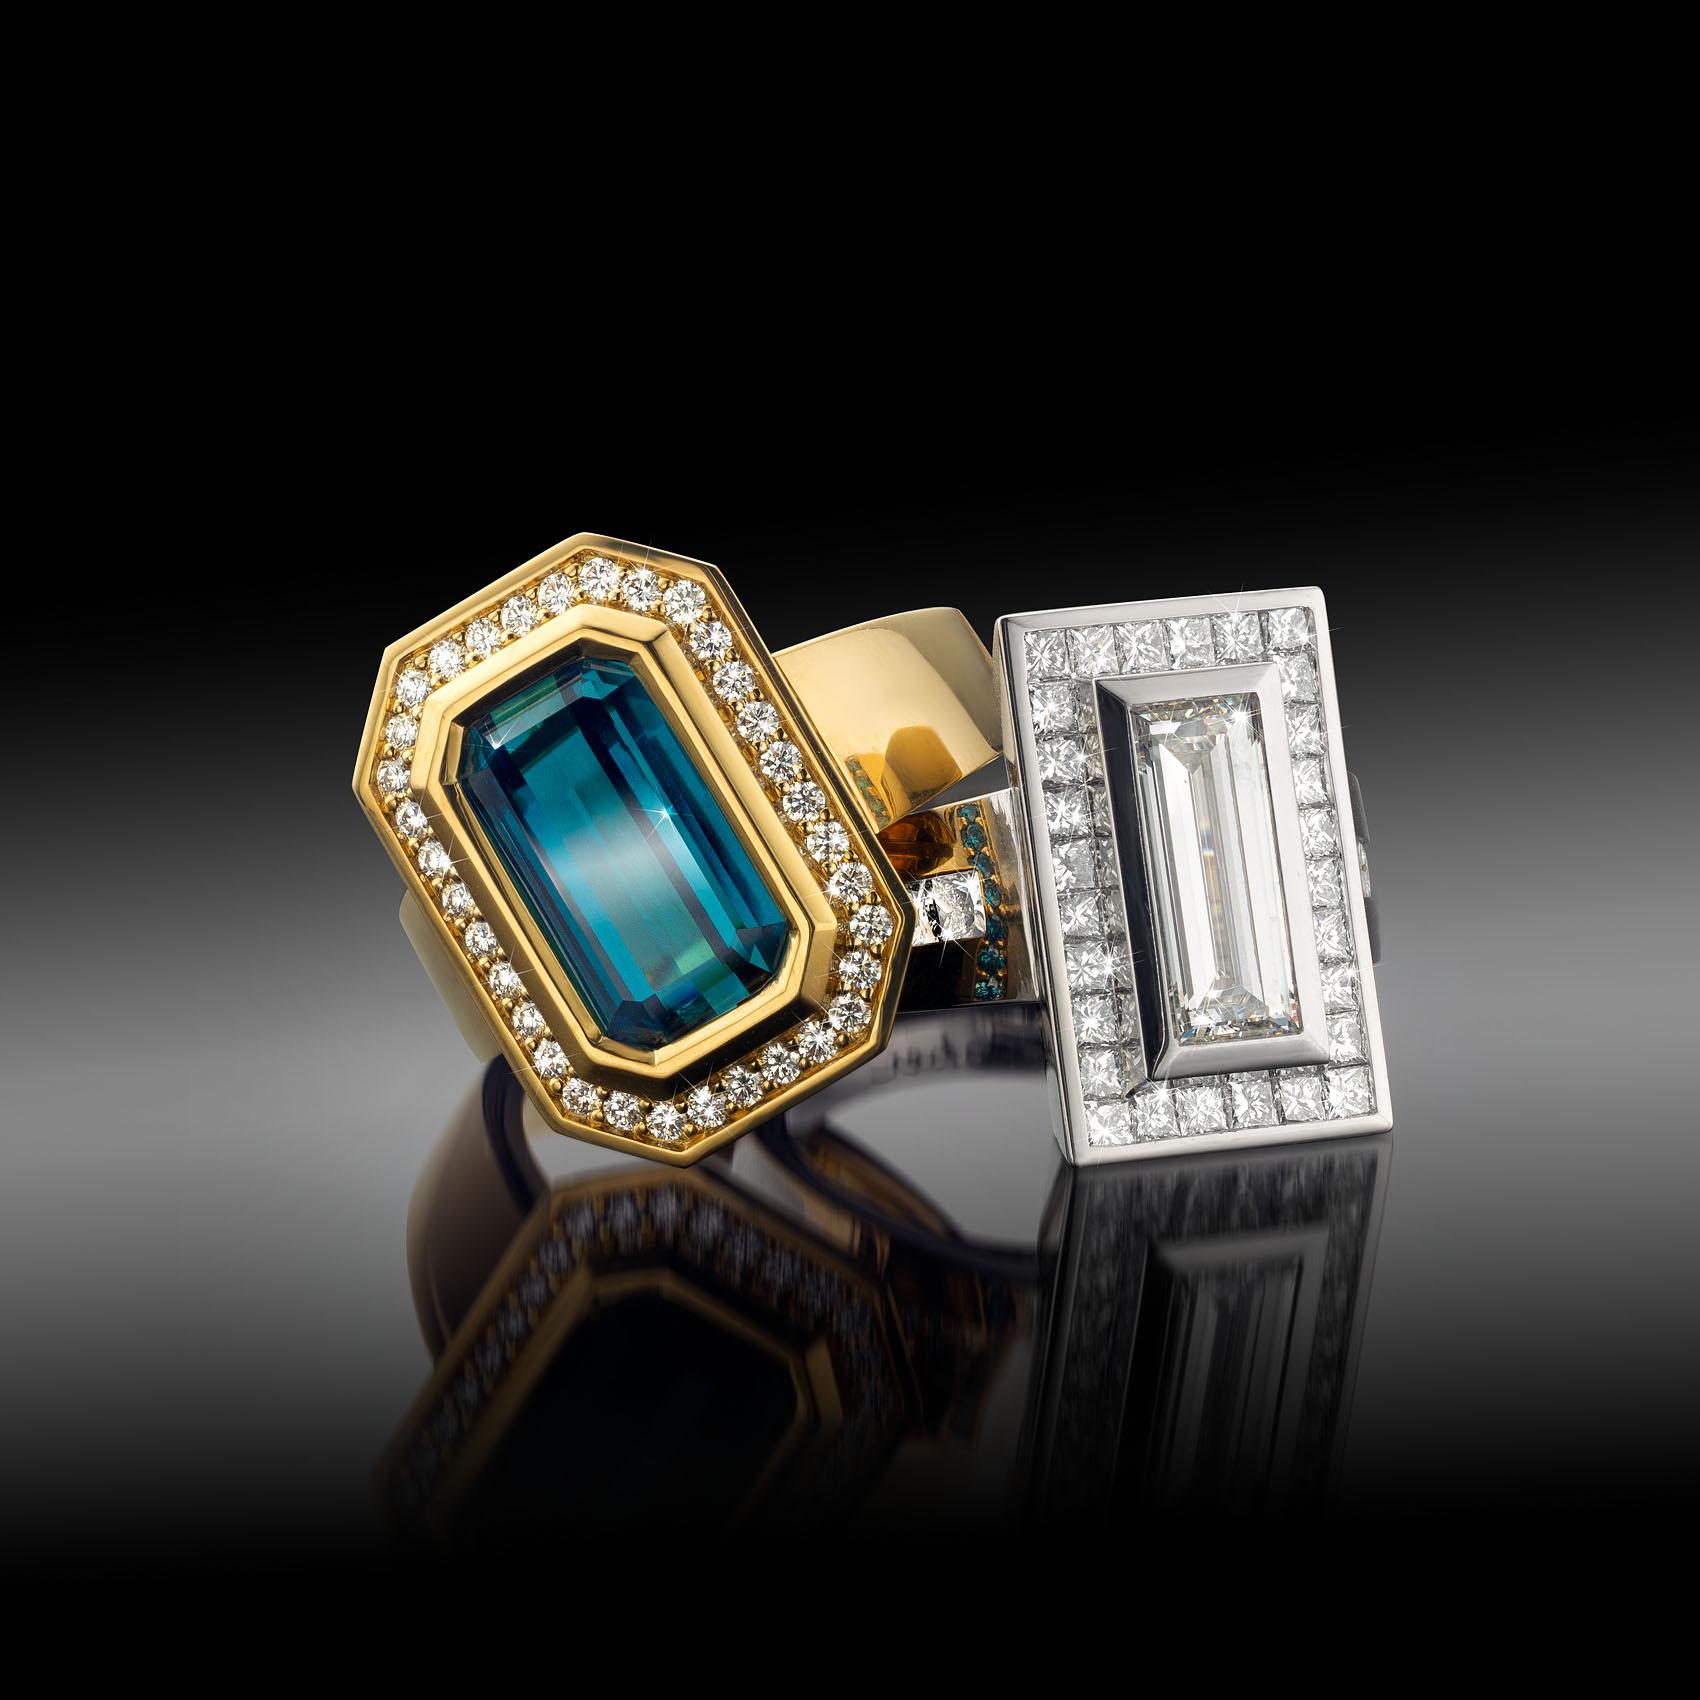 En vente :  Bague Cober 6,2 carats tourmaline indigolite et 40 diamants bleus et 34 diamants    6